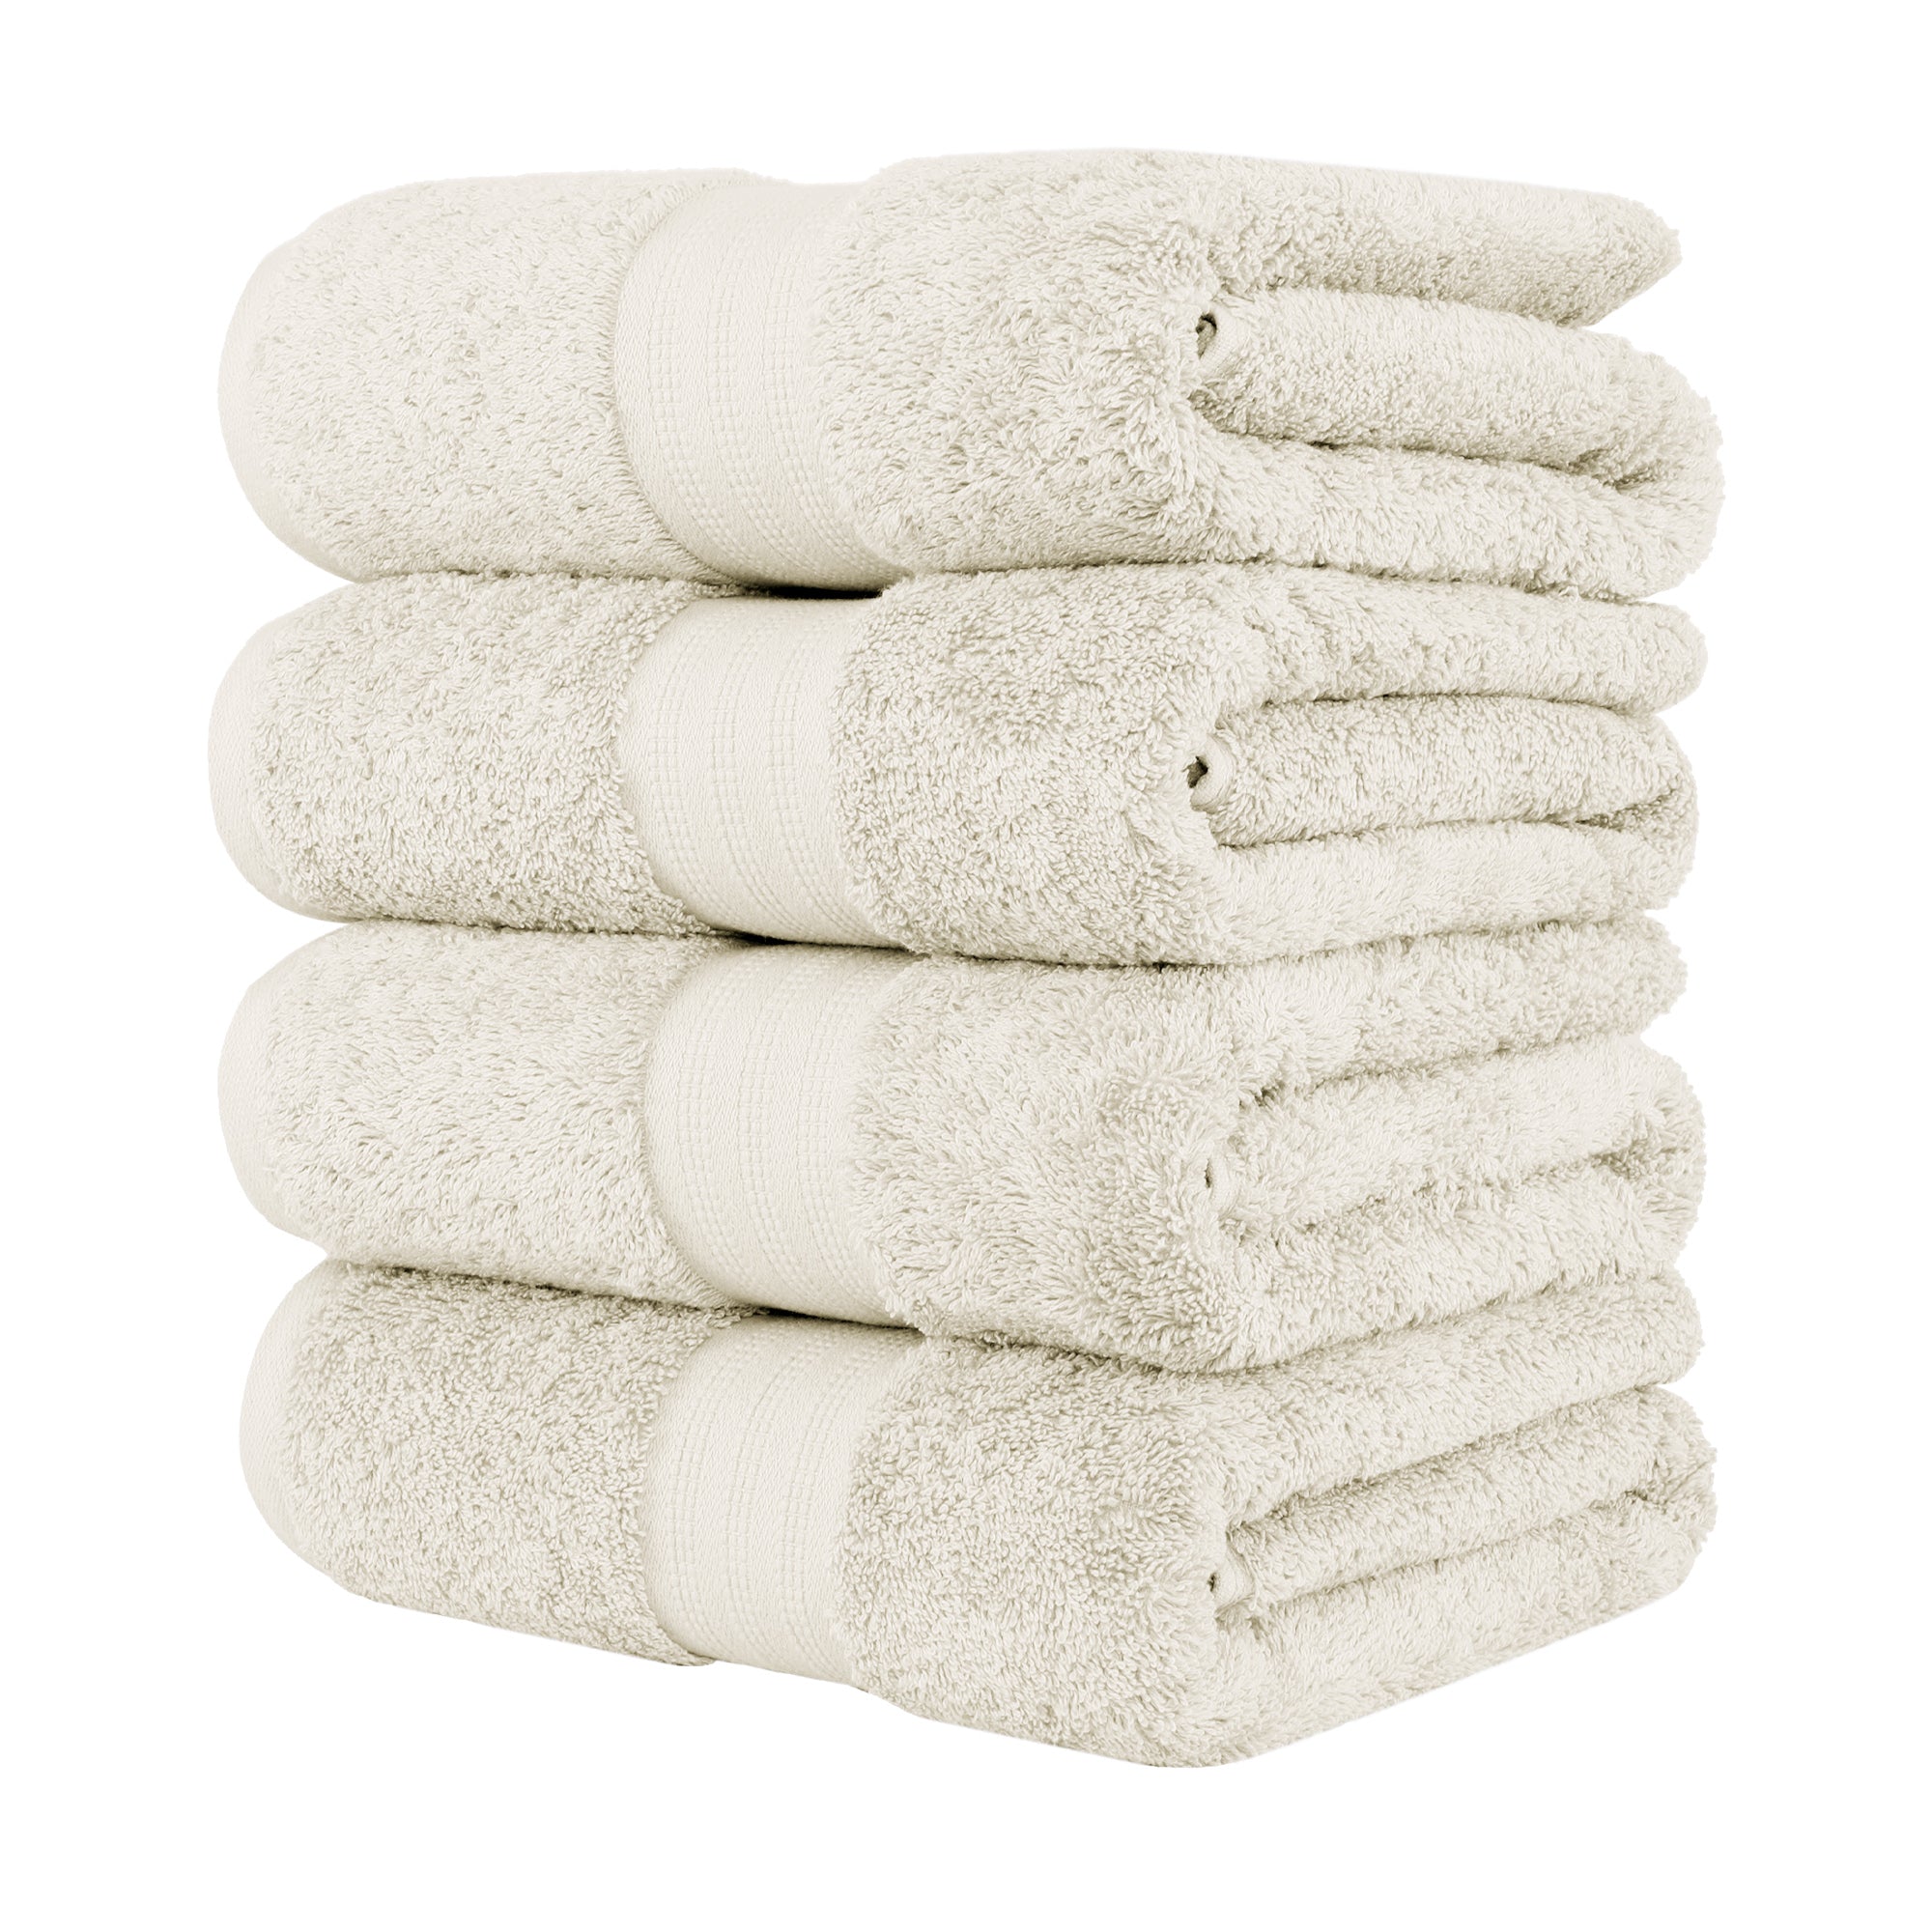 Buy Cotton Bath Towel (Set of 4) Online in India - Kinton Crafts Dark grey / 70x140 cm